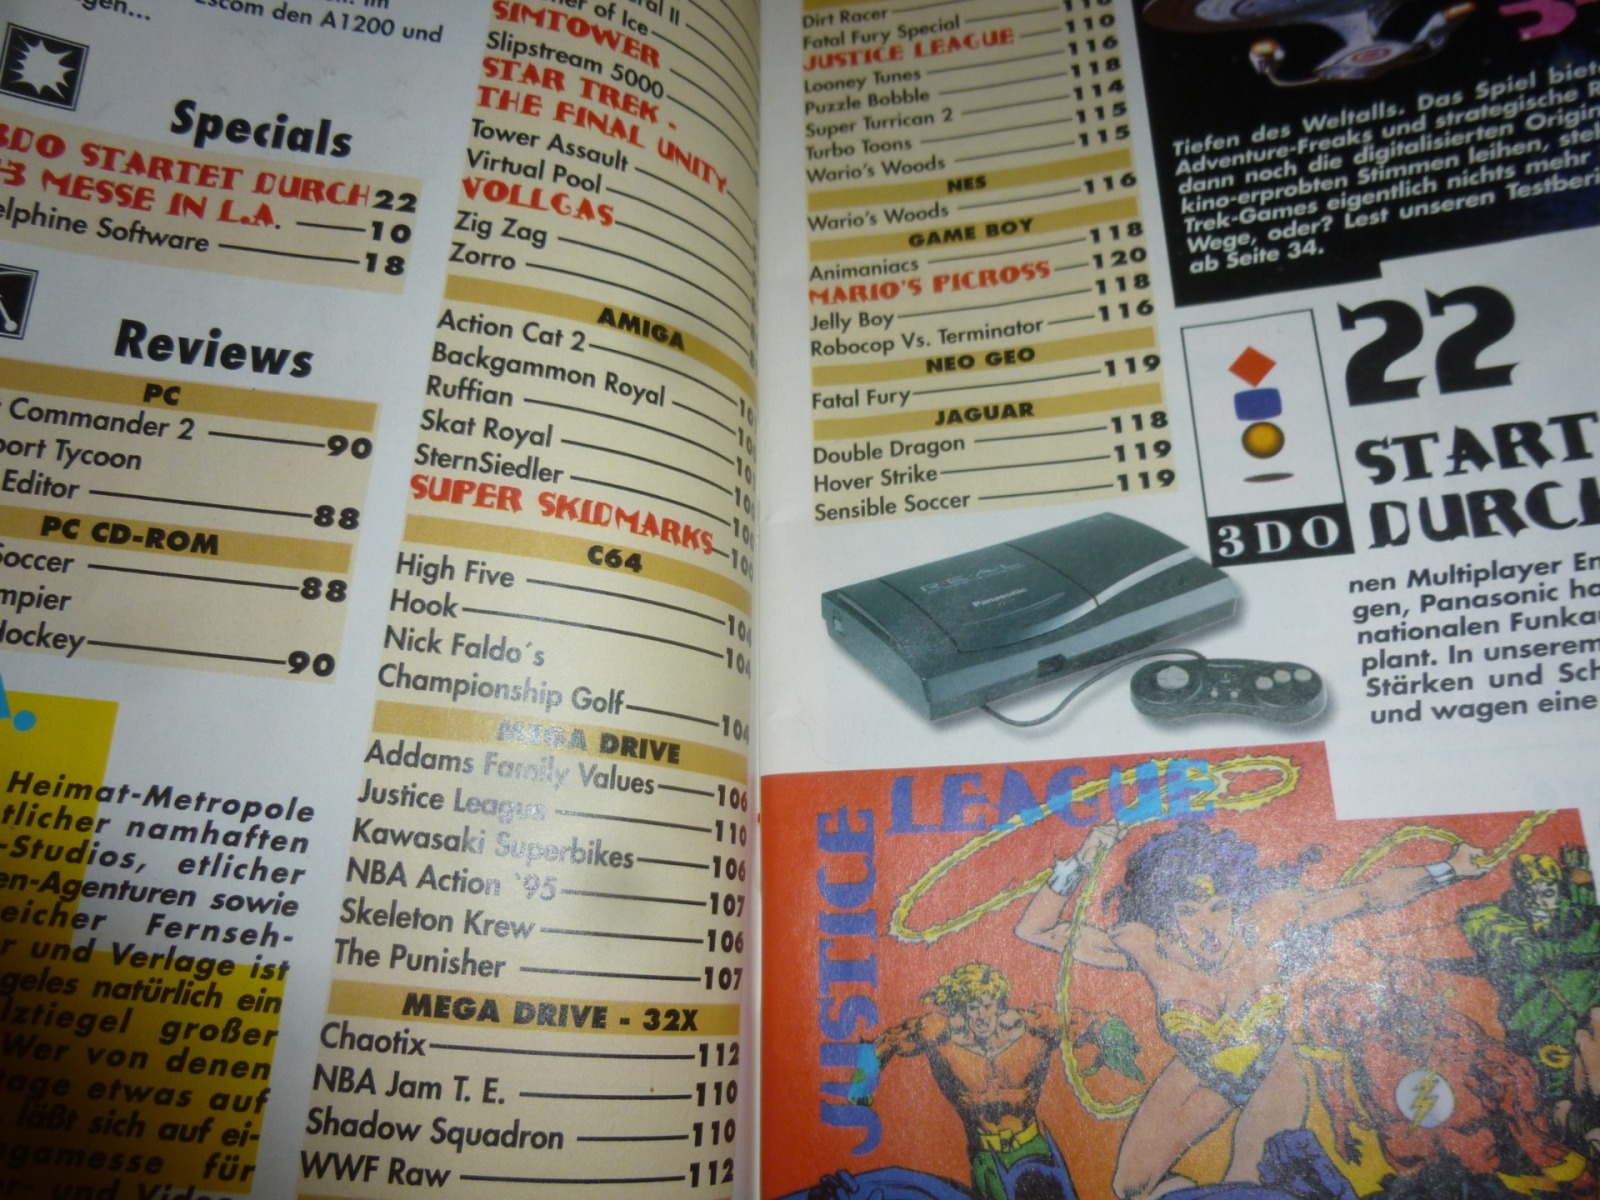 Play Time - Das Computer- und Videospiele-Magazin - Ausgabe 7/95 1995 2